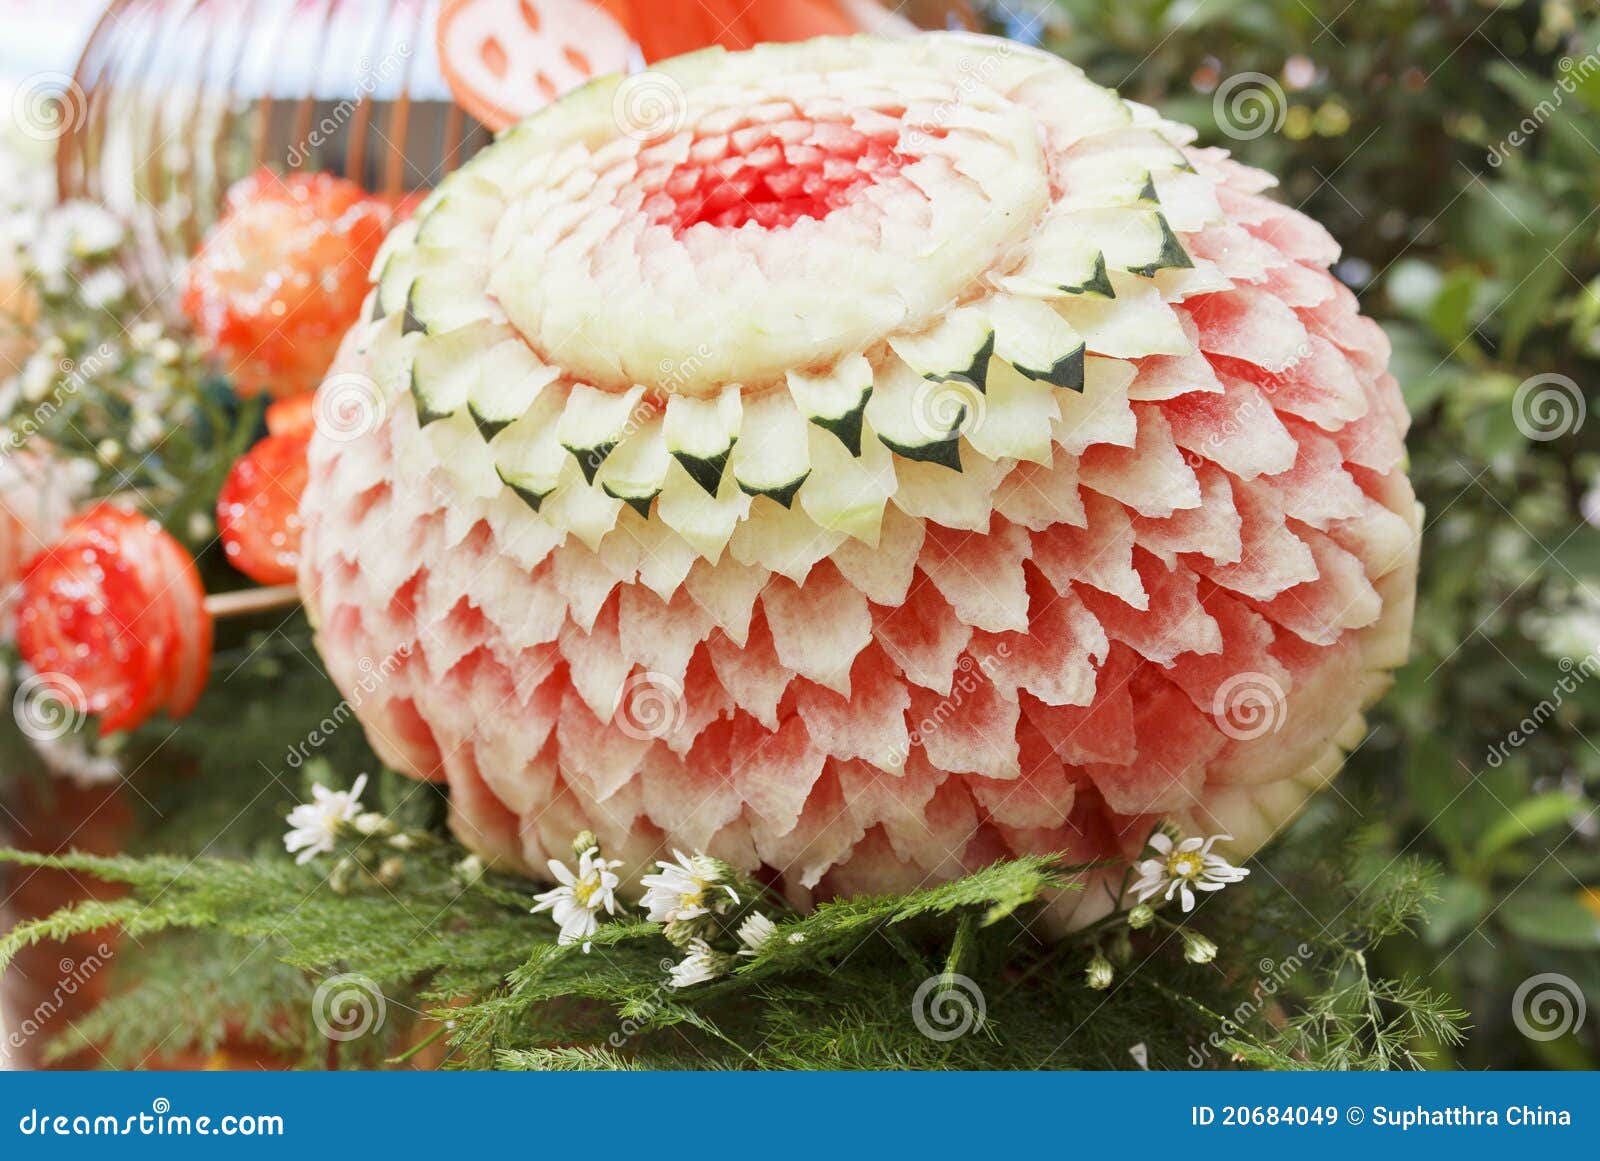 木和园西瓜雕刻艺术美食展示 库存图片. 图片 包括有 点心, 节假日, 创造性, 新鲜, 标志, 工厂 - 224217103